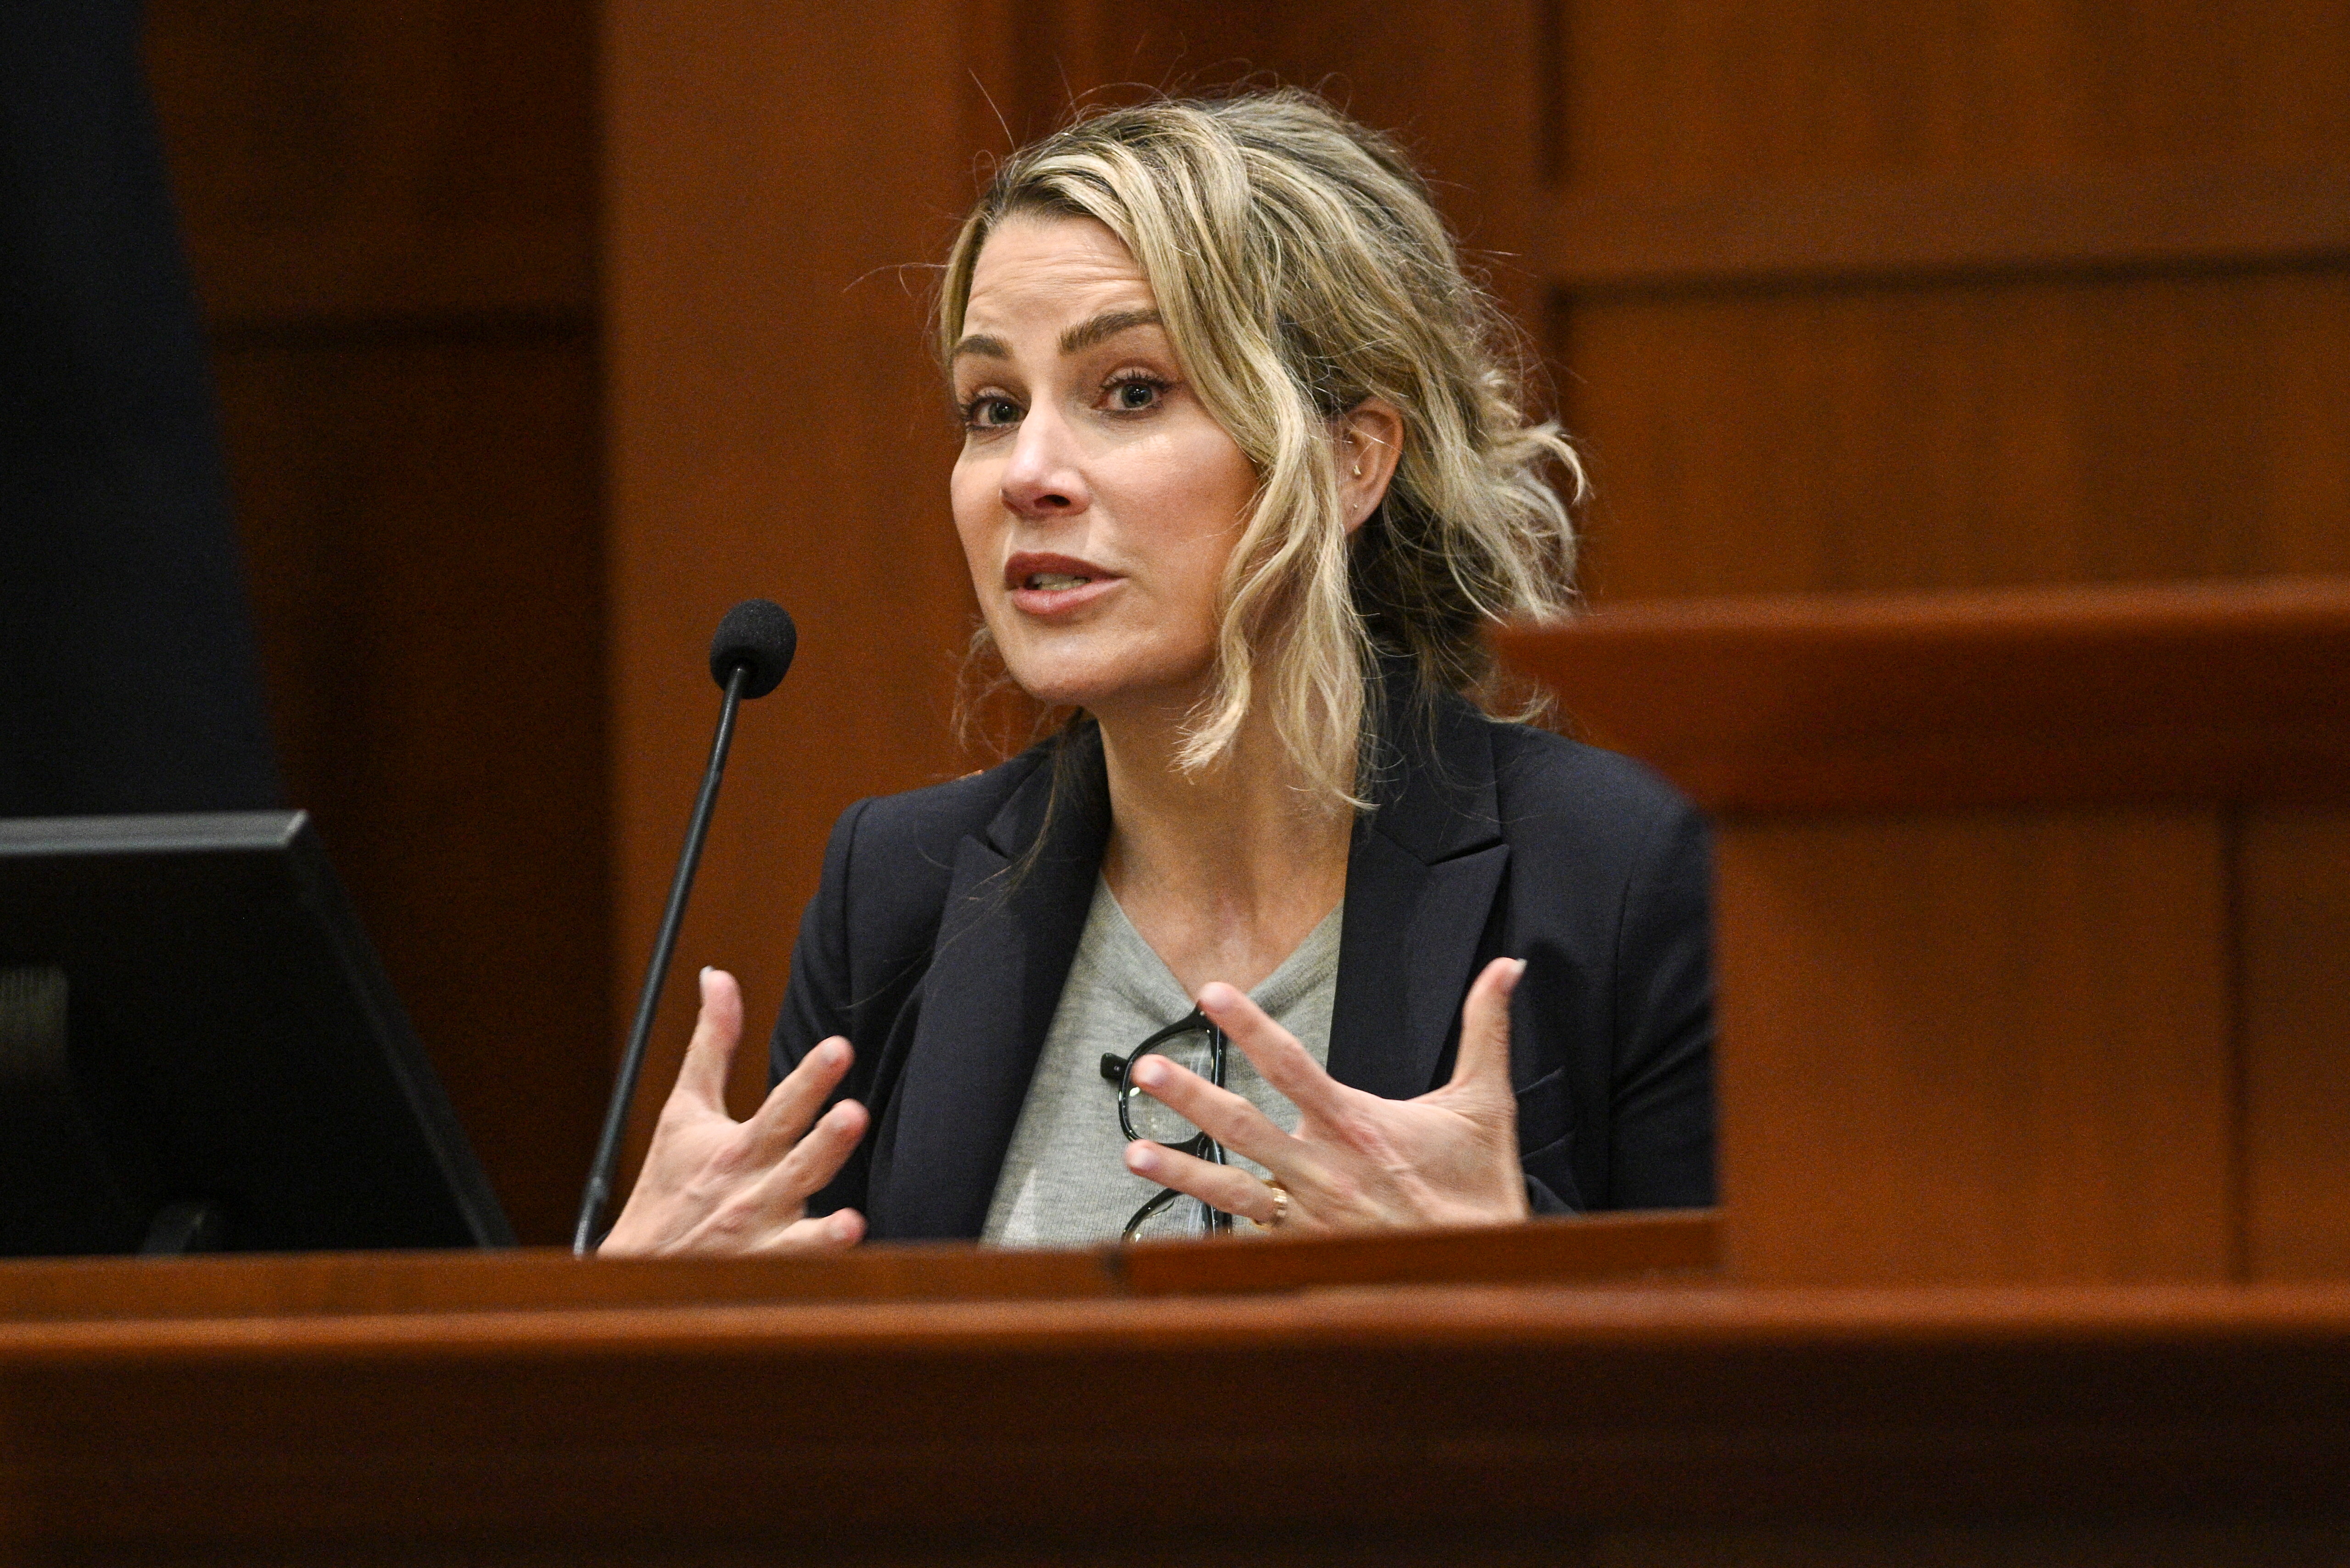 La psicóloga clínica y forense Dra. Shannon Curry testifica durante el juicio por difamación de Johnny Depp contra su ex esposa Amber Heard en el juzgado del condado de Fairfax en Fairfax, Virginia, EE. UU., el 26 de abril de 2022. Brendan Smialowski/Pool vía REUTERS